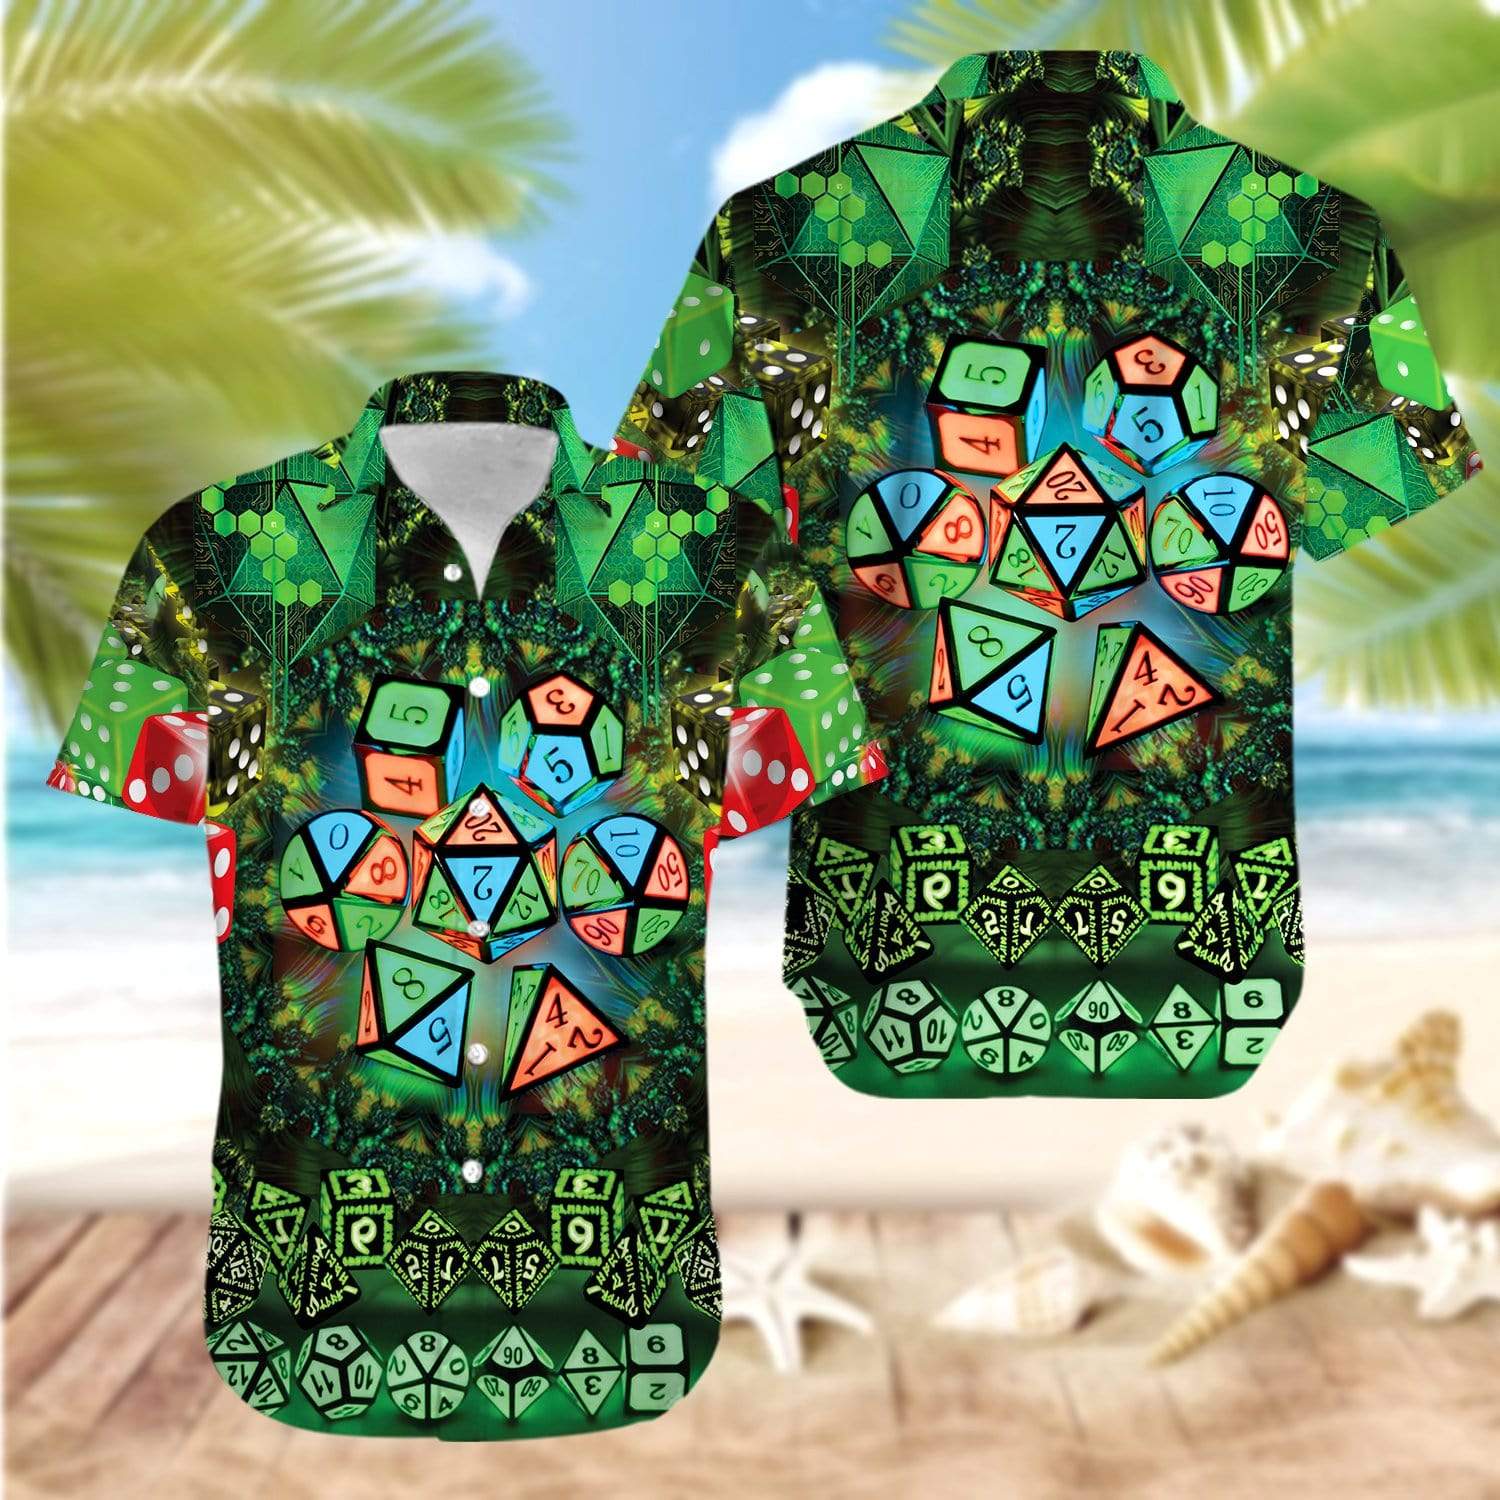 Glowing Kaleidoscope Dice Luck Green Hawaiian Aloha Shirt For Men Women – Hothot